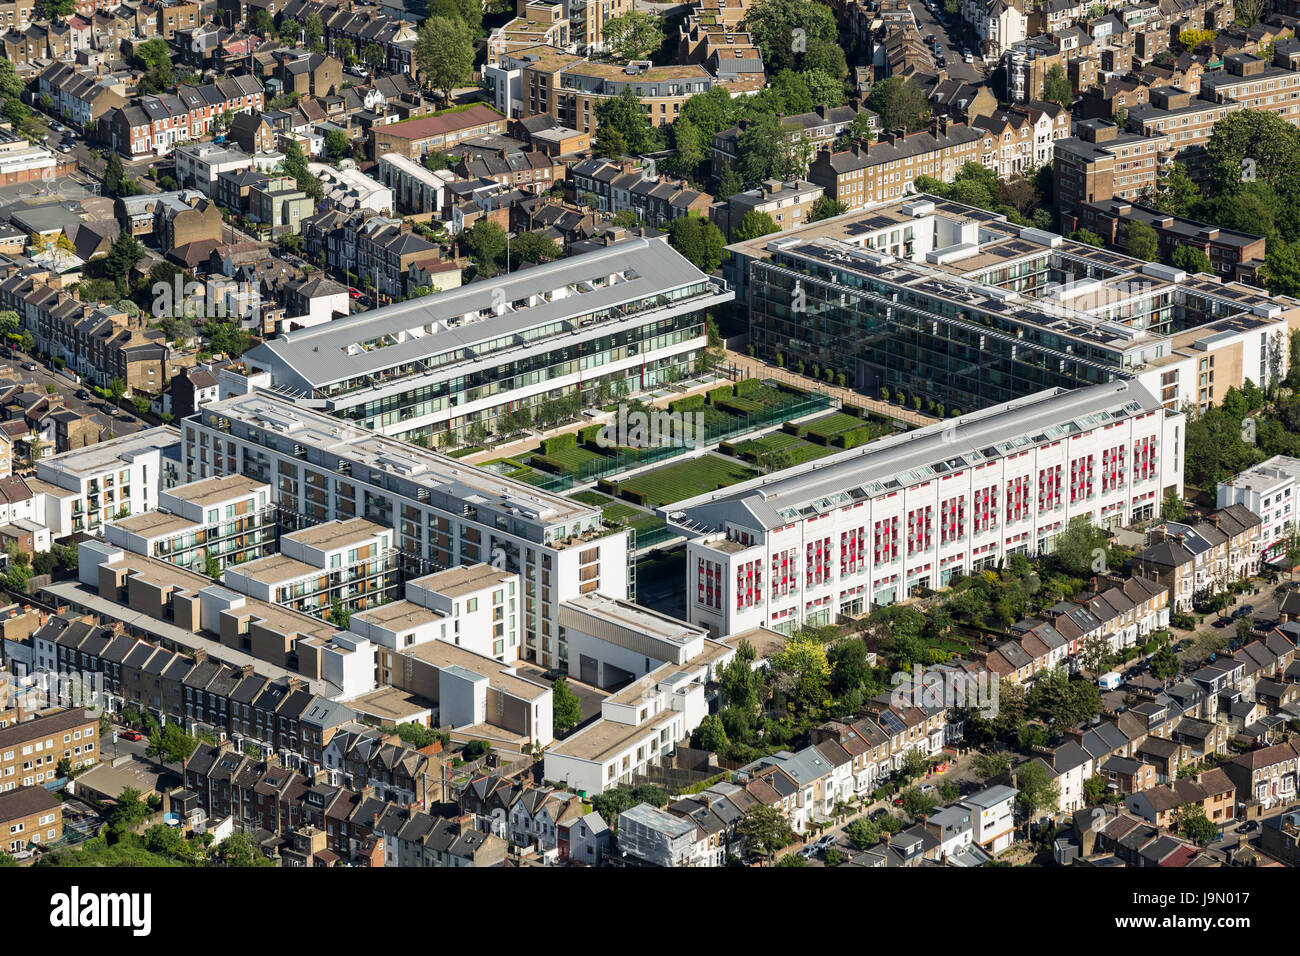 Highbury, l'ancien stade du Club d'Arsenal a été transformé en appartements et appartements. Islington, Londres N5 Banque D'Images